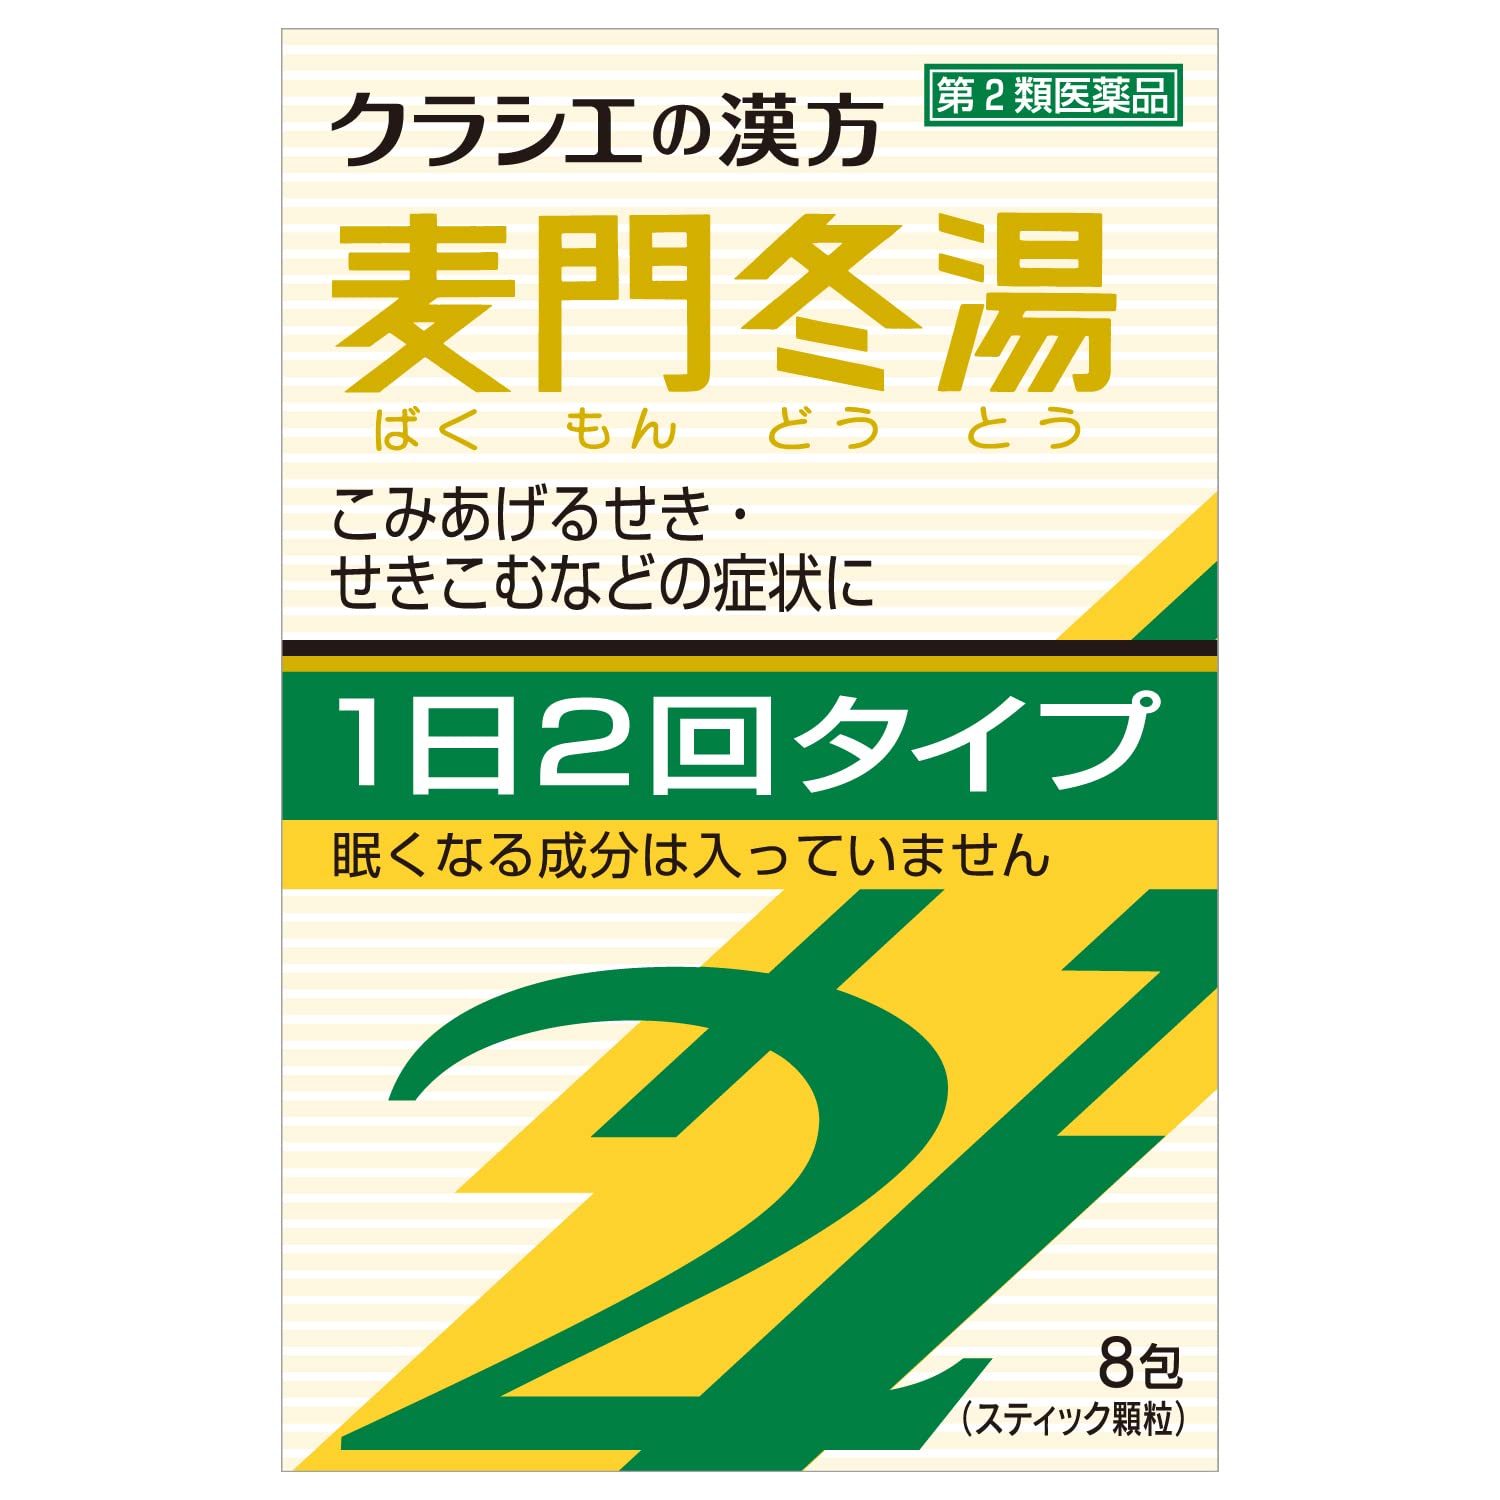 Kracie Kampo Bakumondo Extract Granules 8 Packs - Japan Otc Drug 2Nd Class